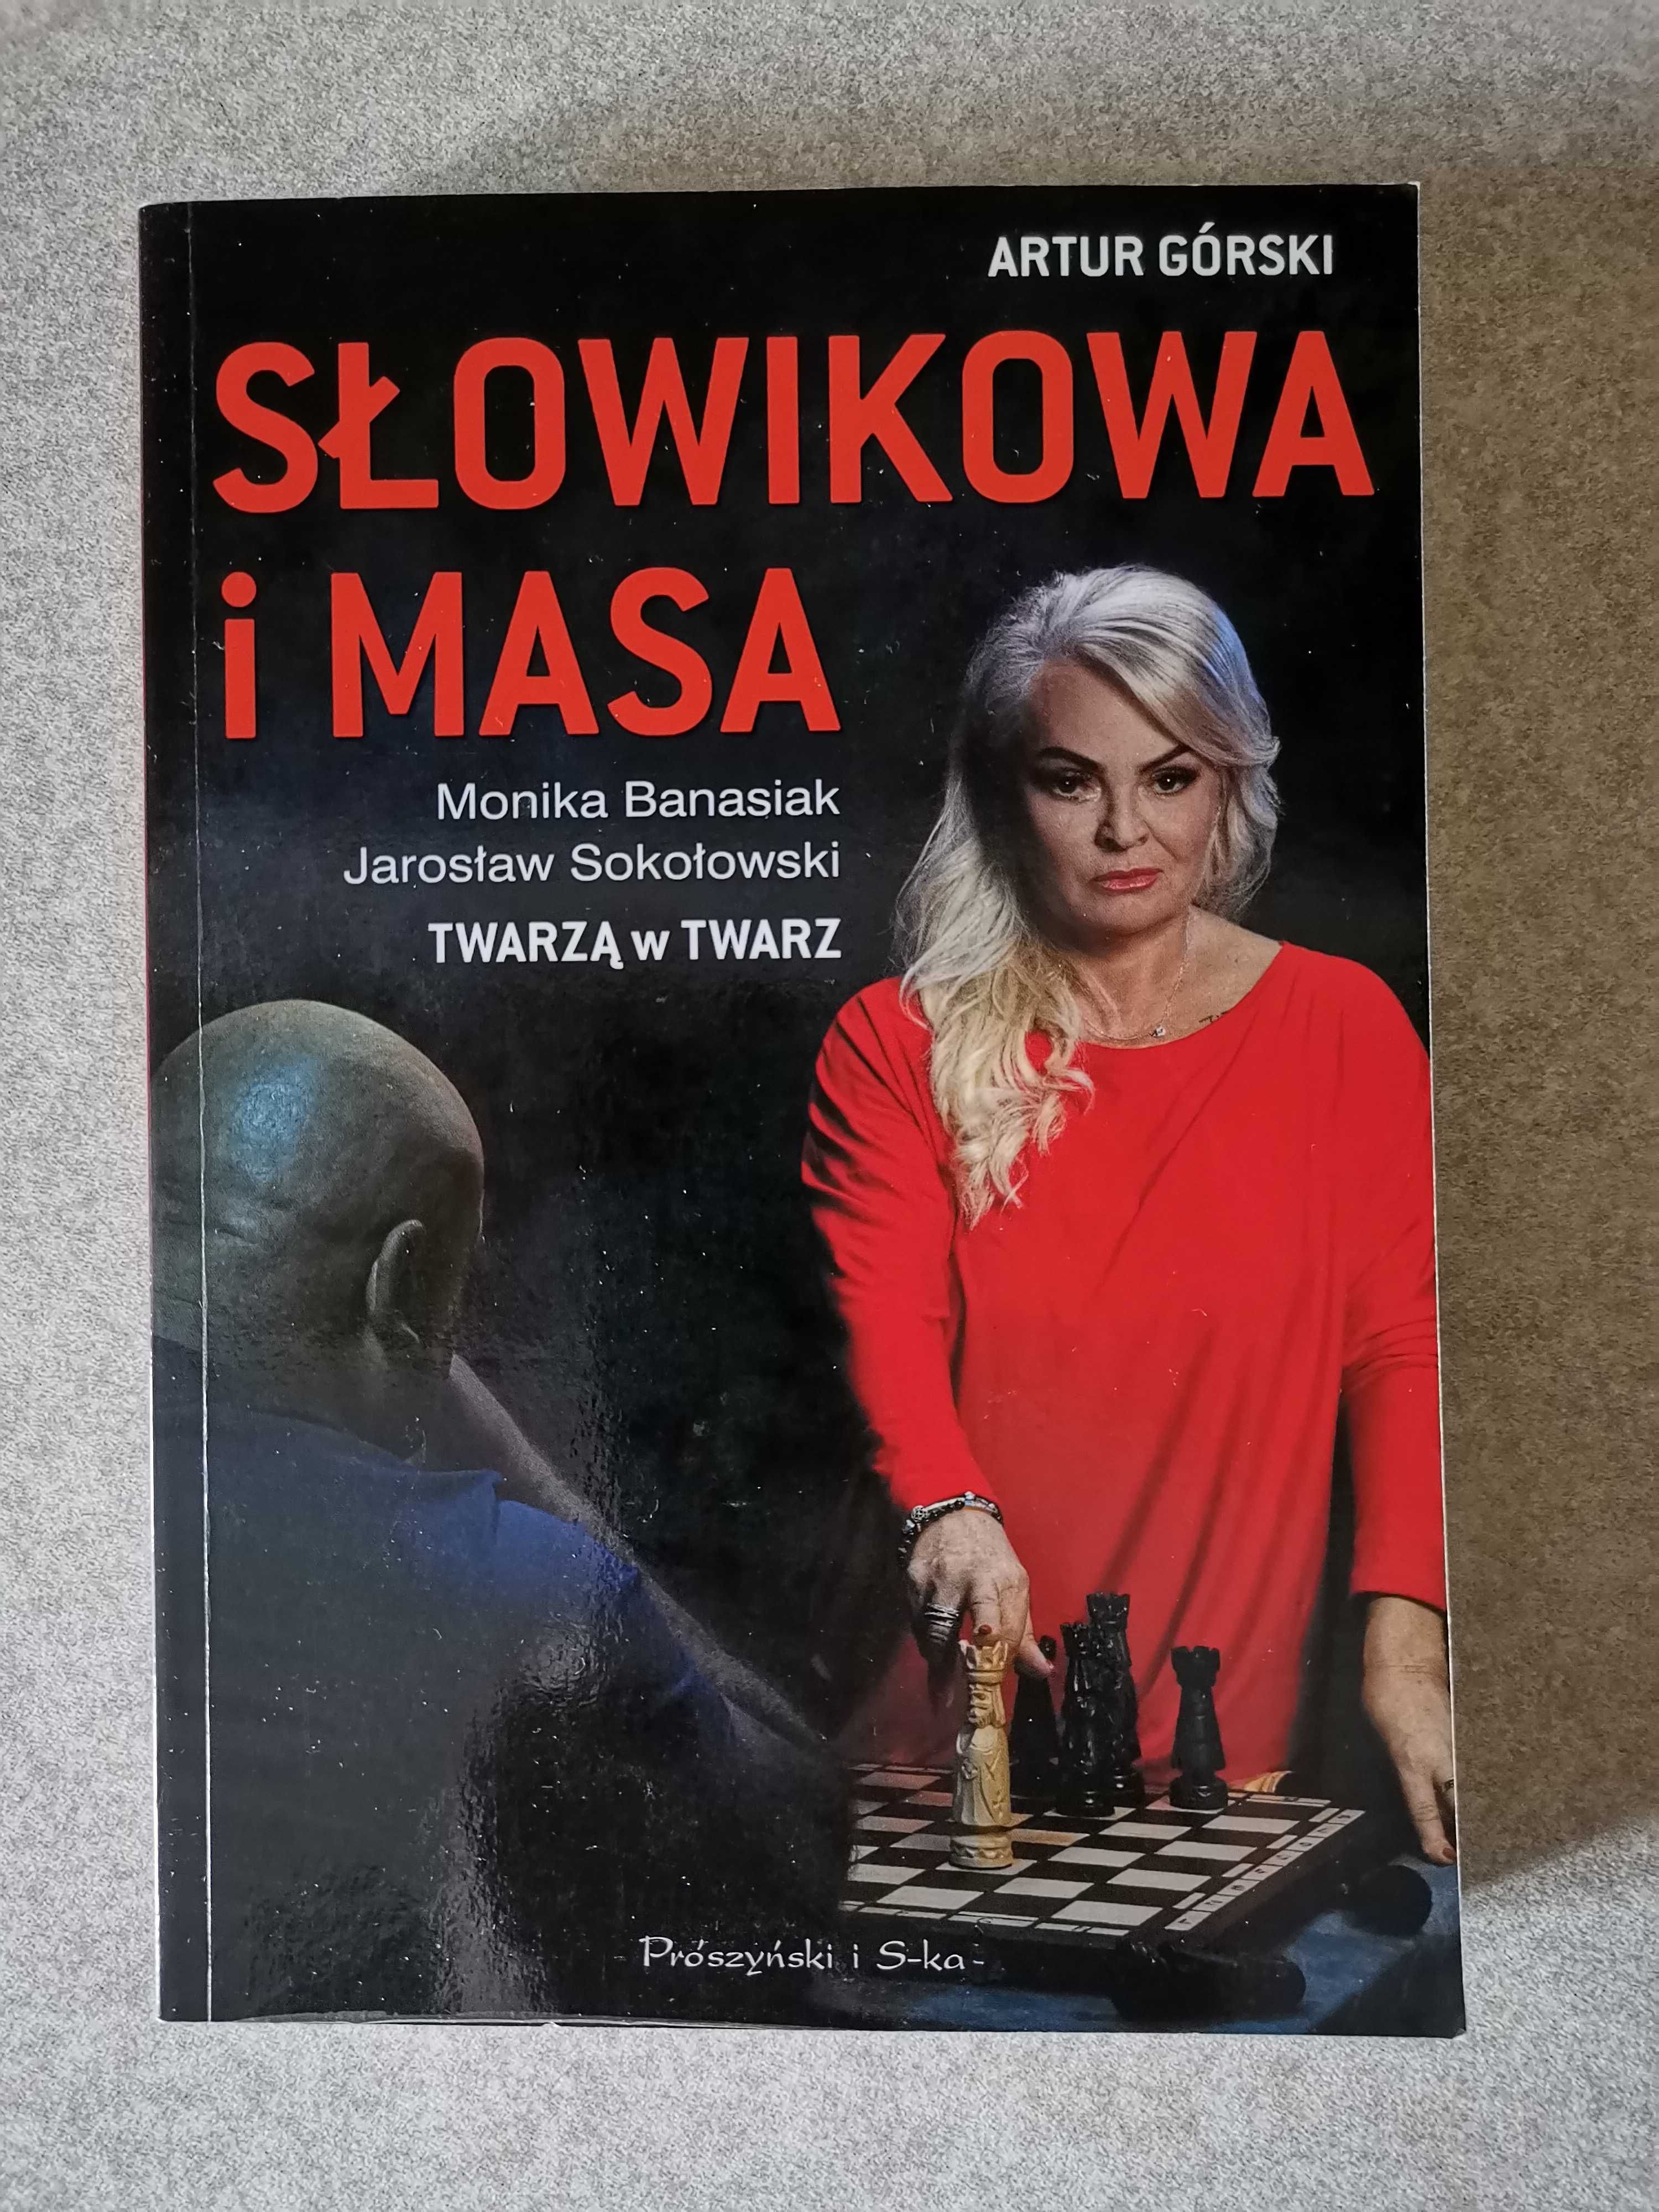 Słowikowa  i Masa,  autor Artur Górski